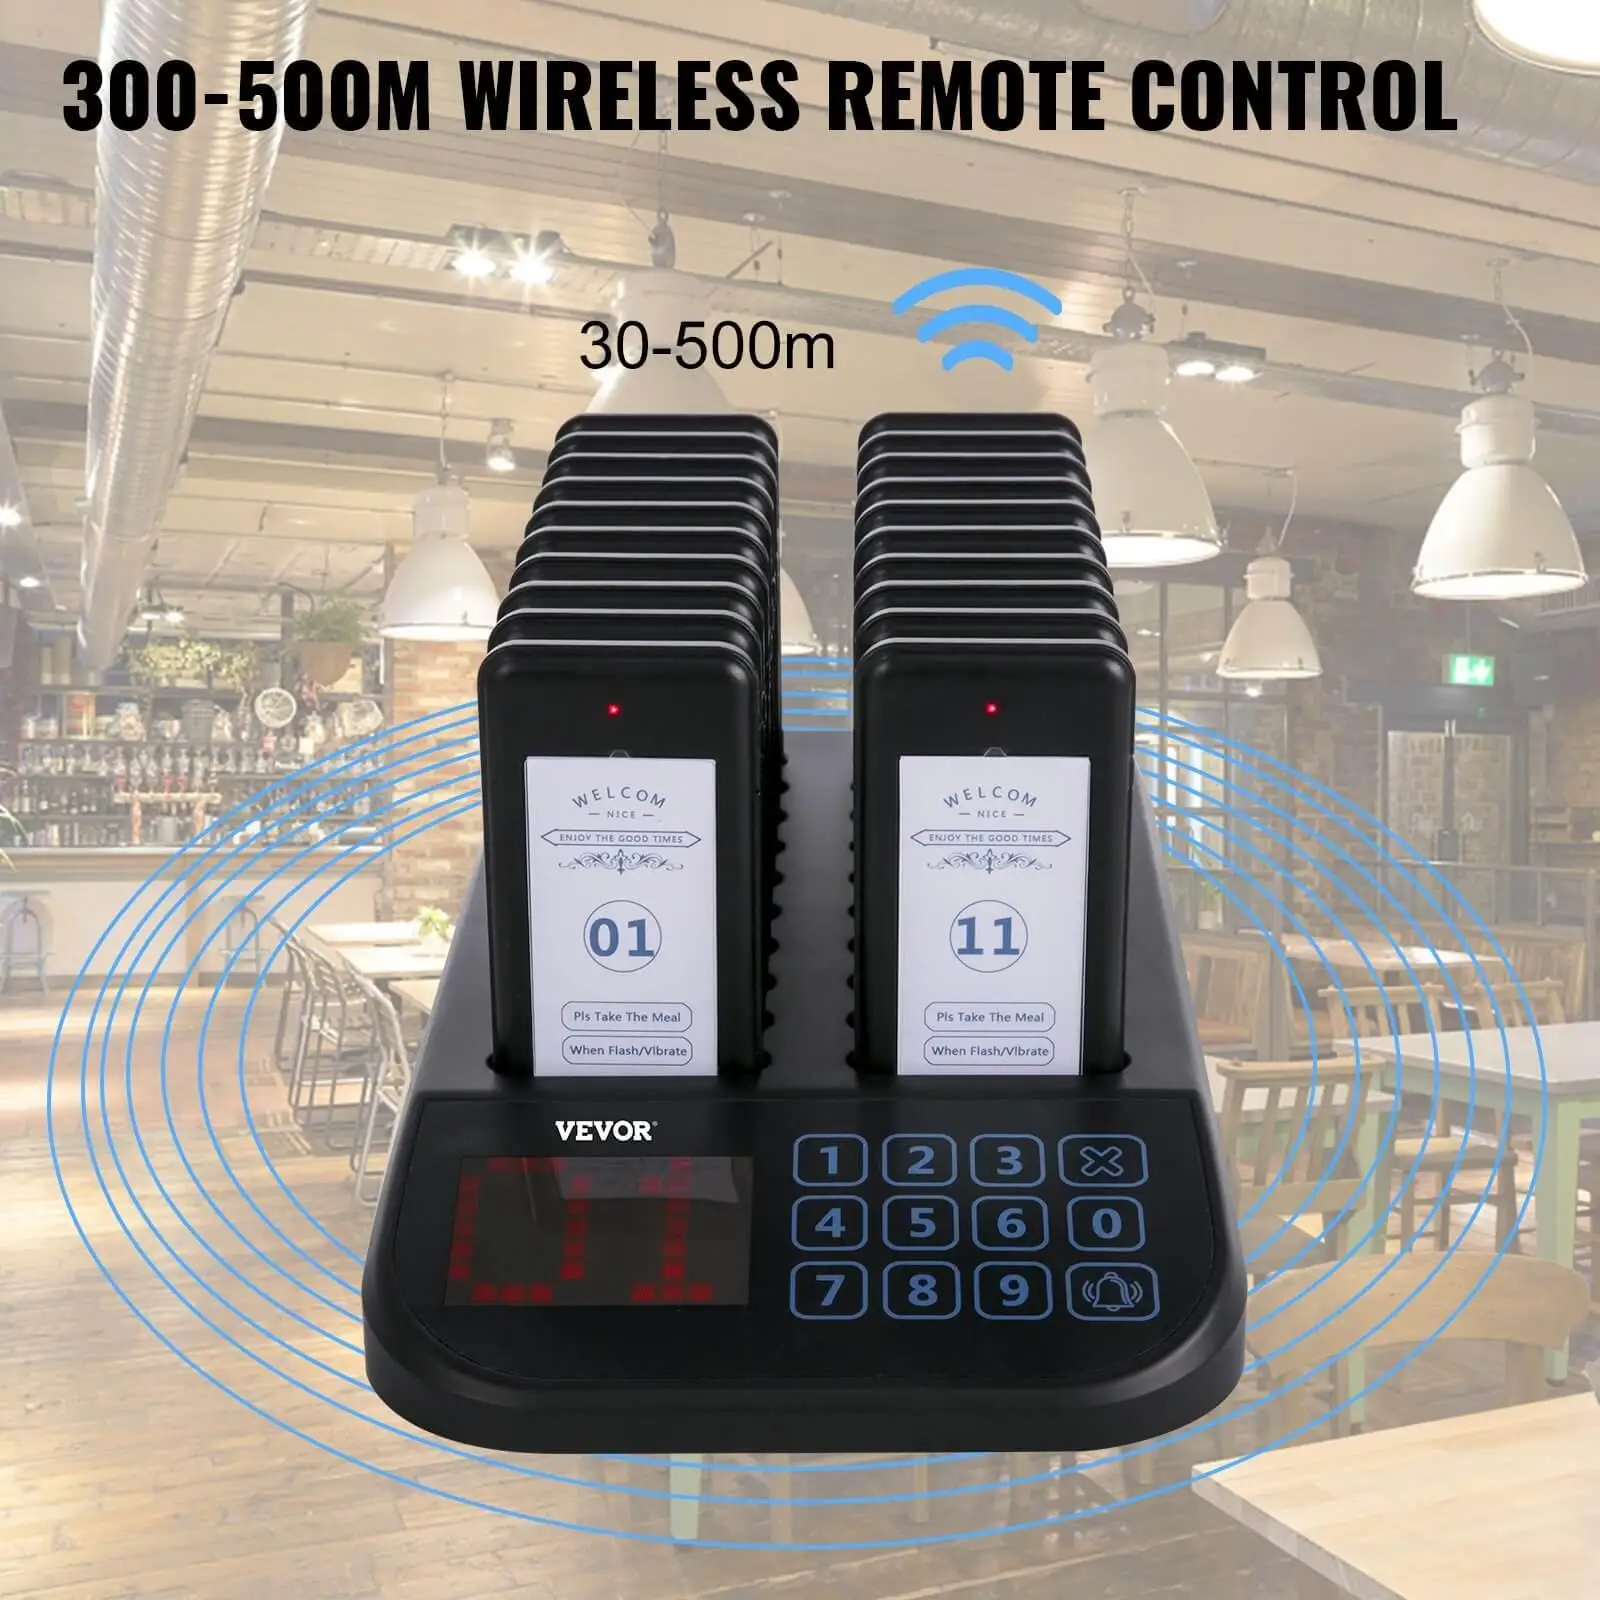 300-500m wireless working range - VEVOR